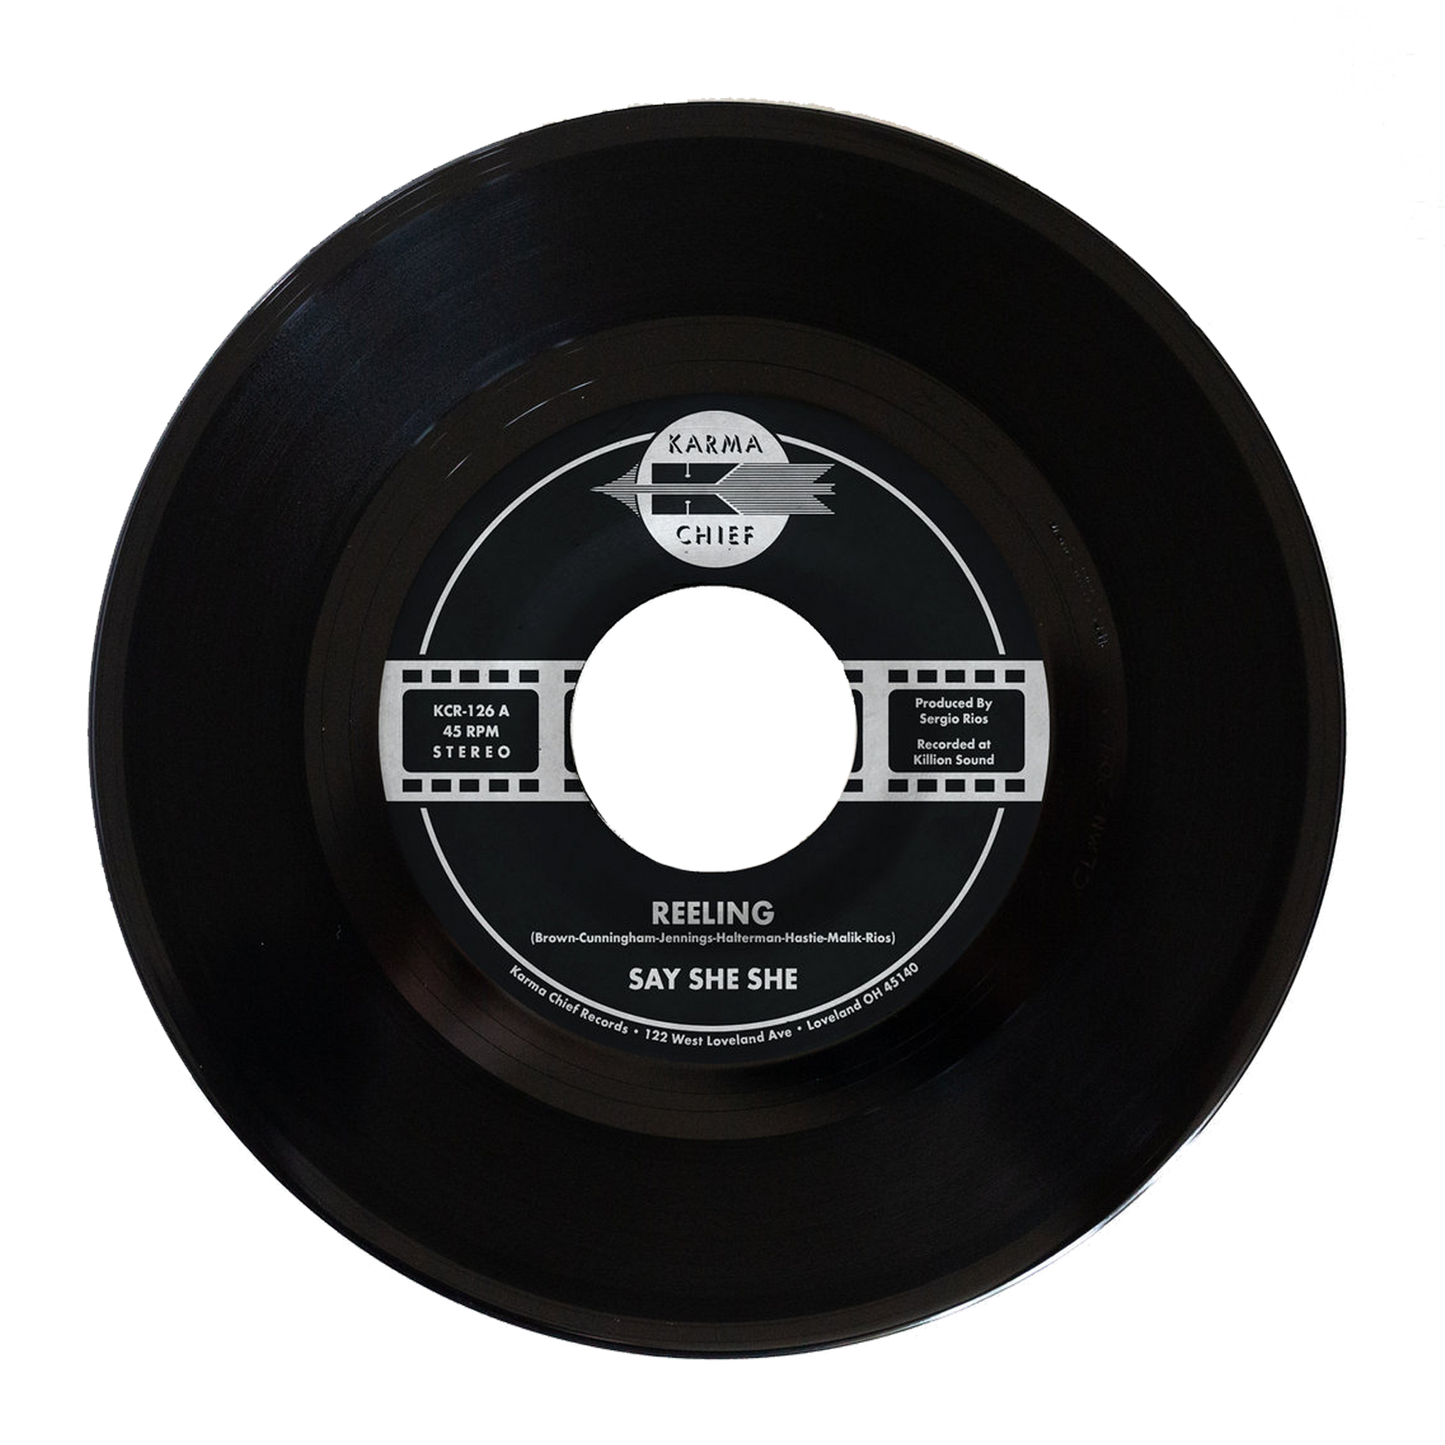 Reeling / Don't You Dare Stop 7" Black Vinyl UK